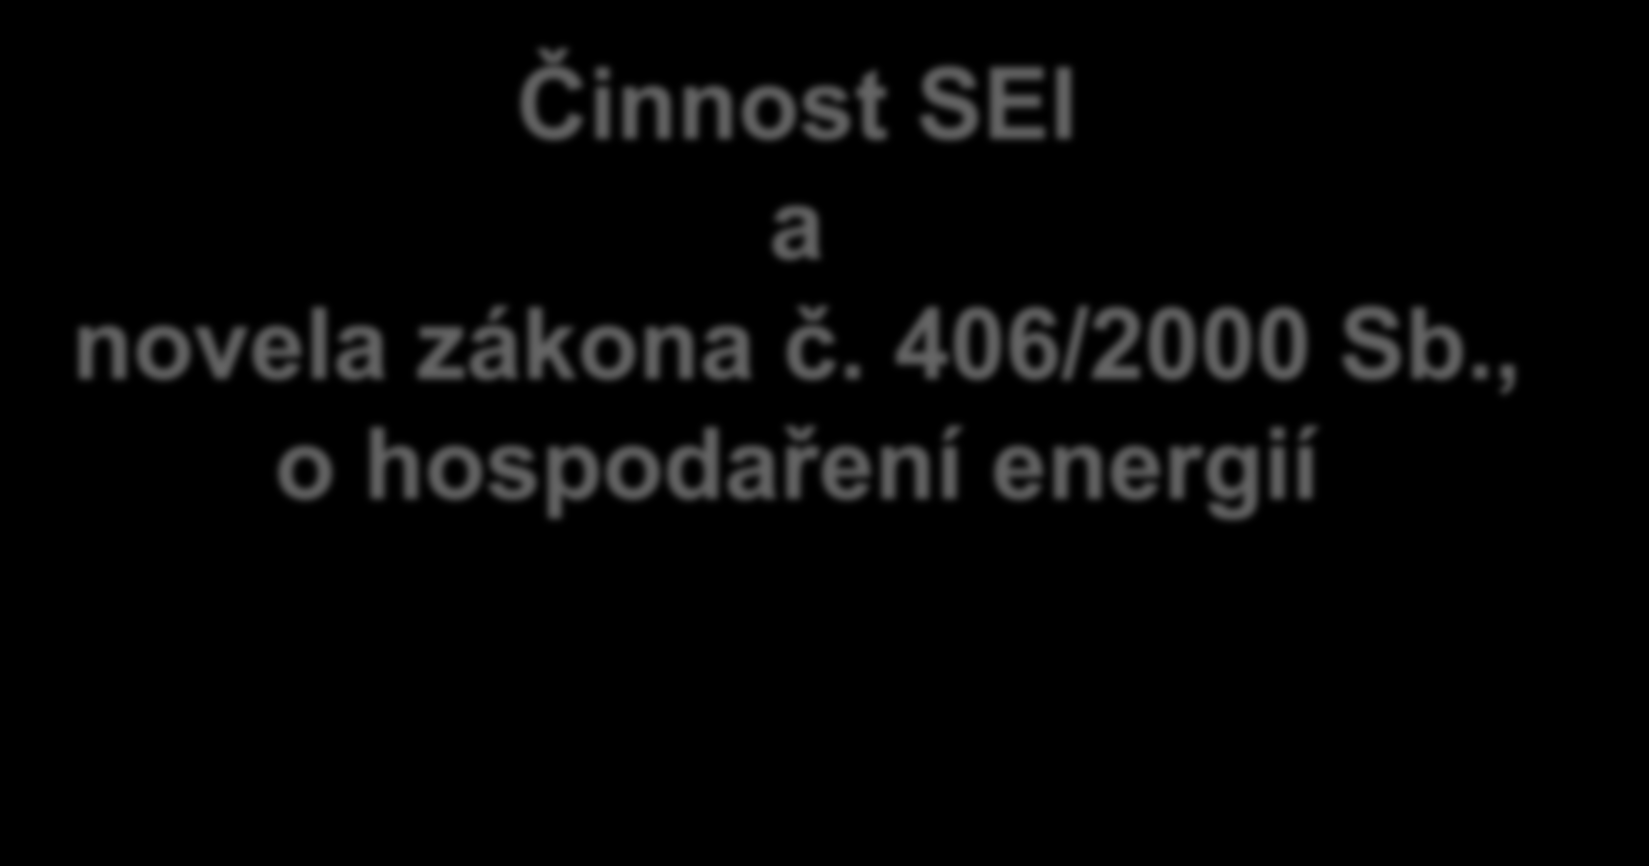 Činnost SEI a novela zákona č. 406/2000 Sb., o hospodaření energií Ing.